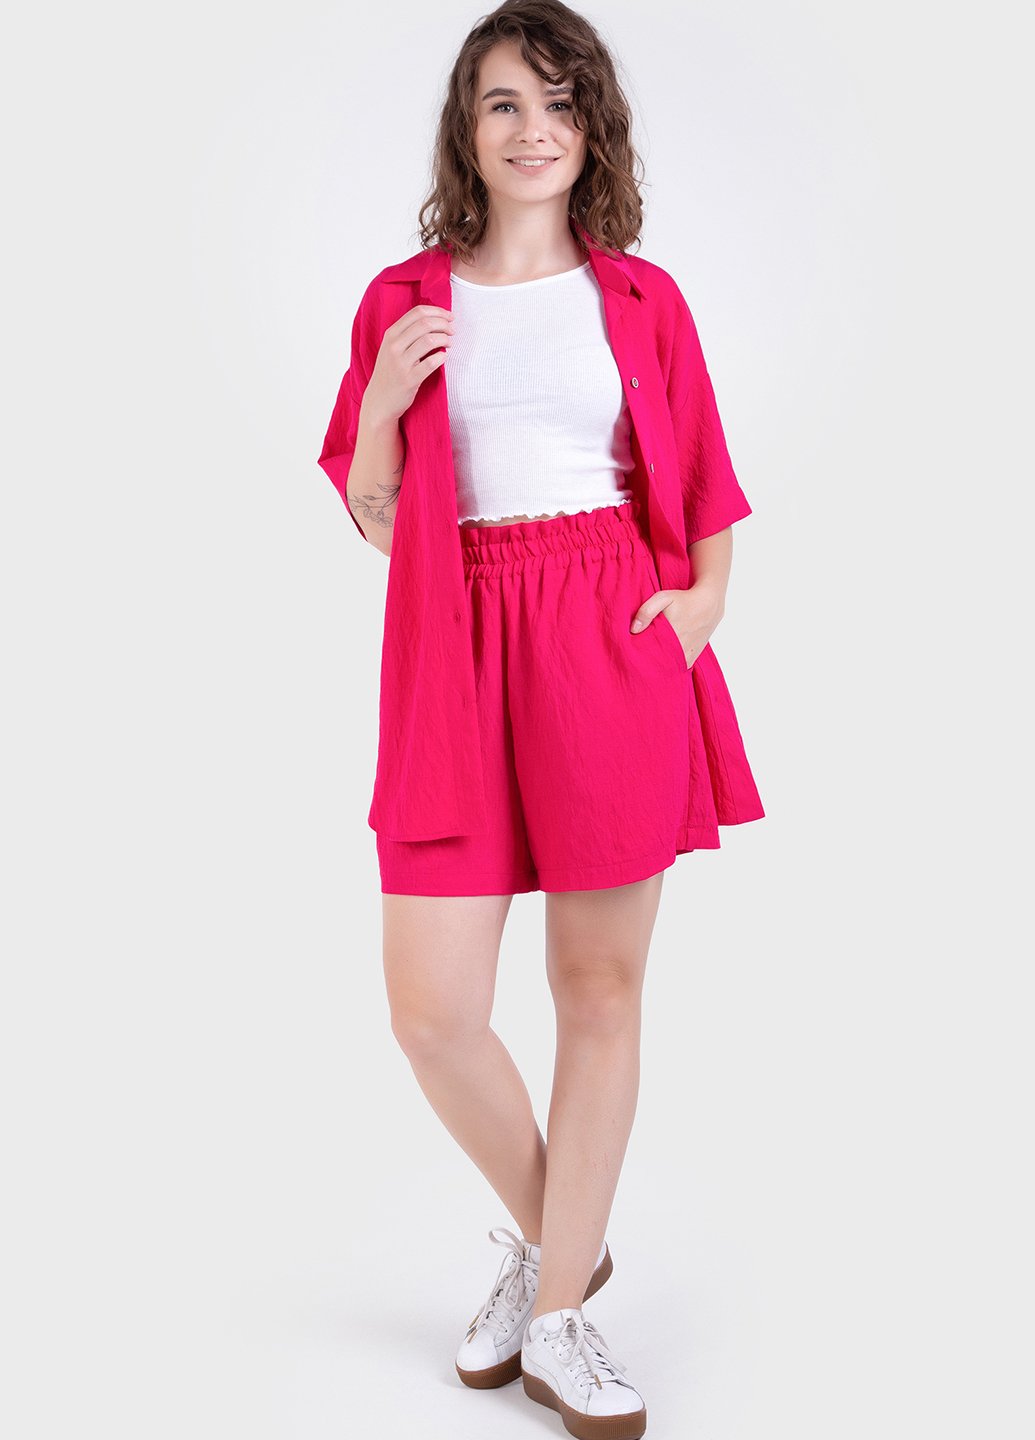 Купить Летний костюм женский двойка малинового цвета: шорты, рубашка Merlini Мессина 100000146, размер 42-44 в интернет-магазине